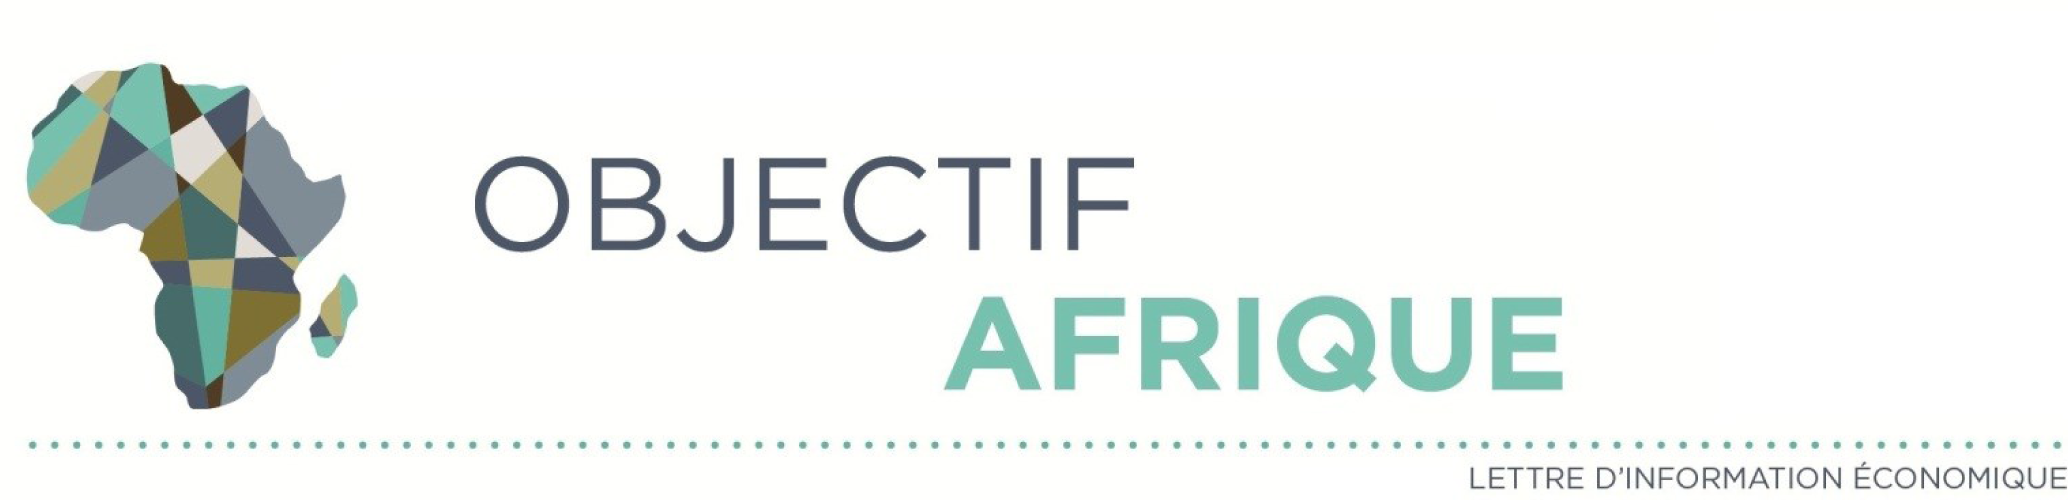 Visuel Objectif Afrique